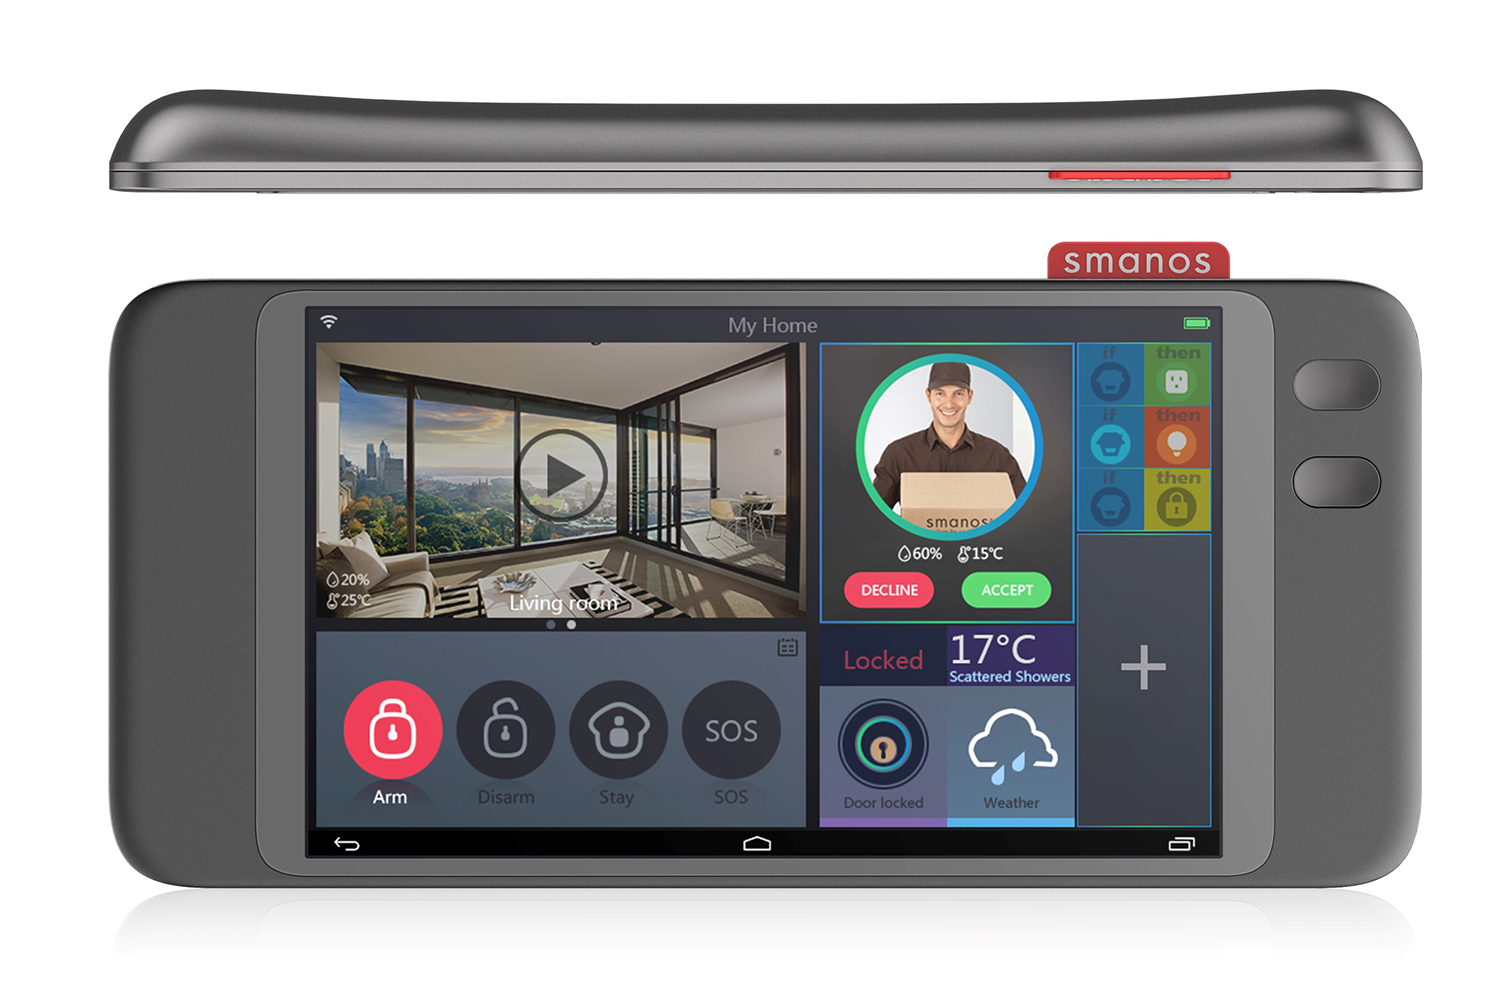 smanos wireless security smart home touchscreen controller 2